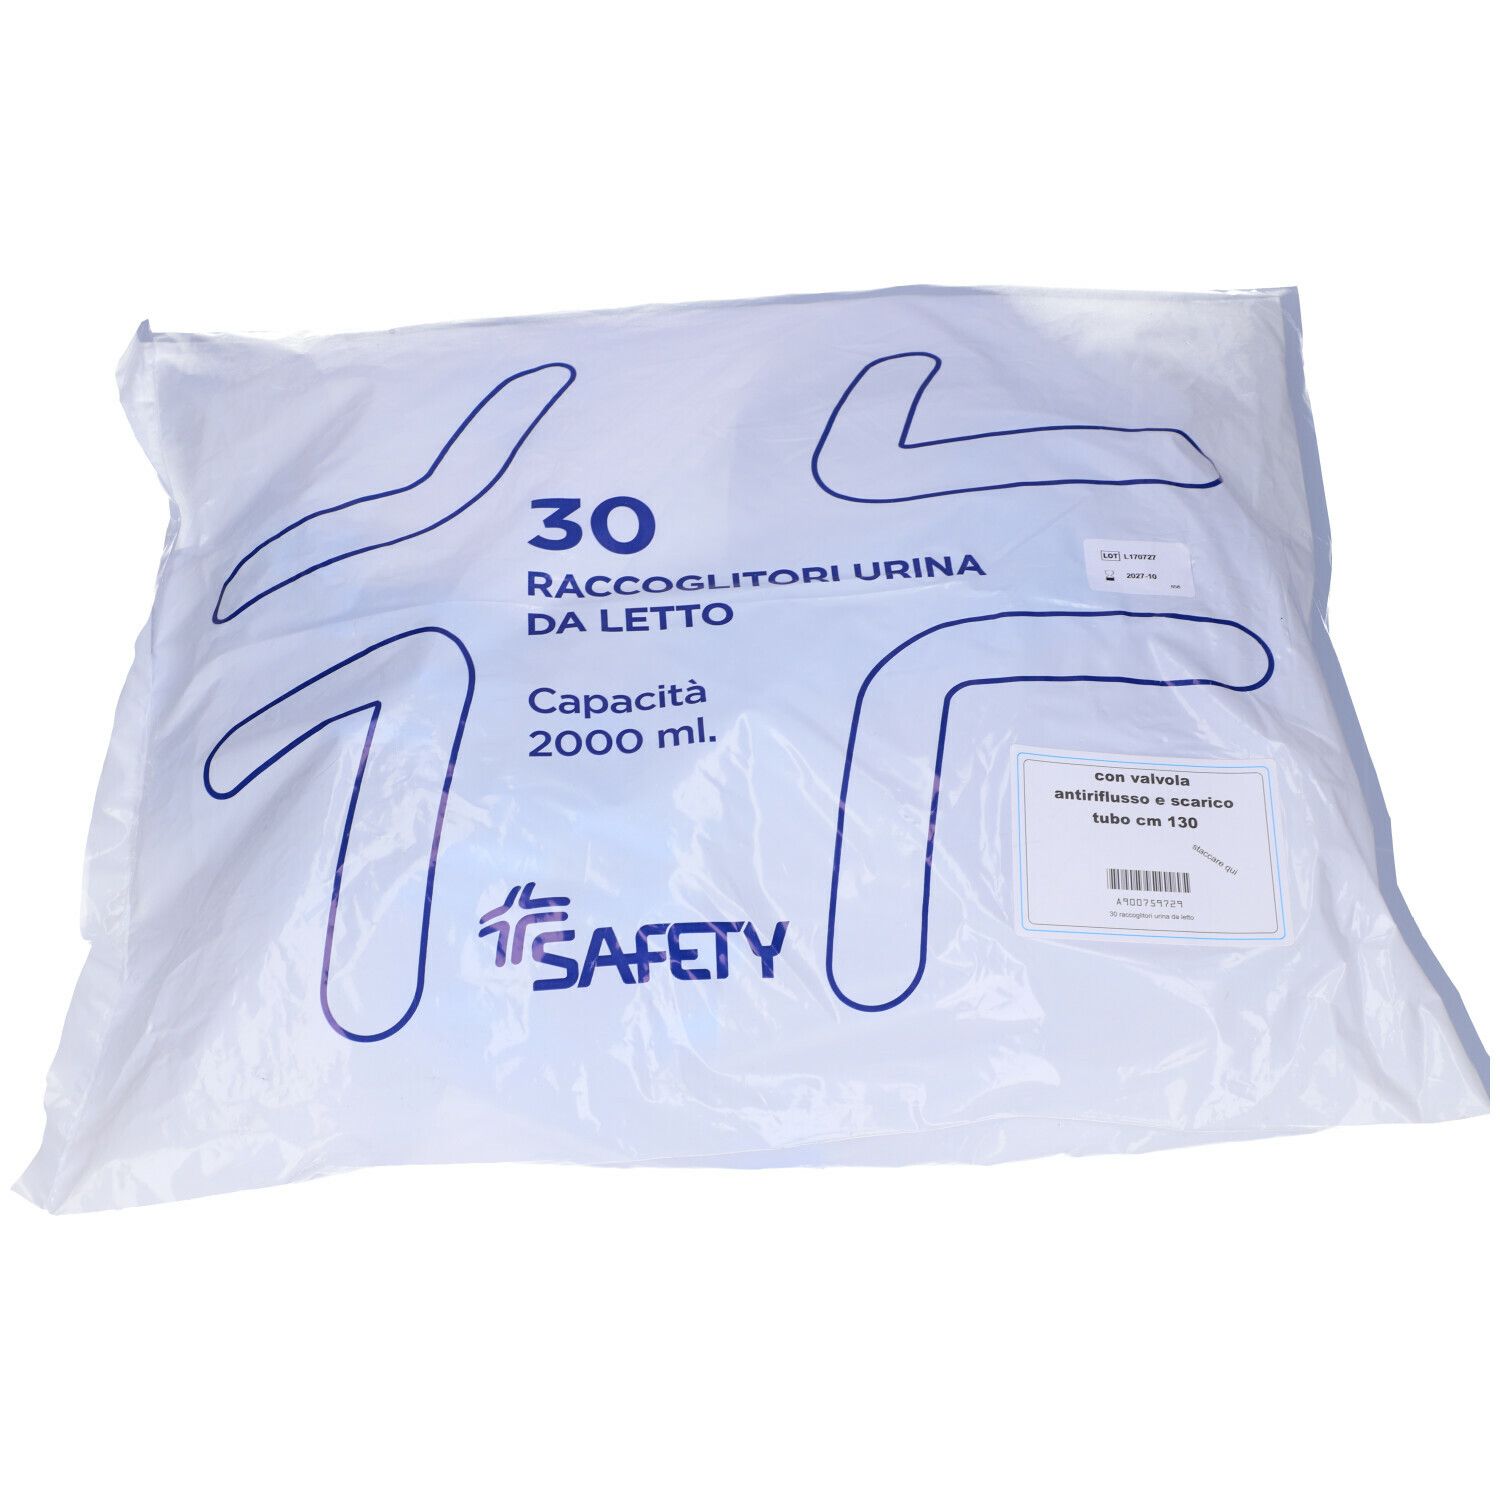 Safety Raccoglitori Urina da letto con tubo da 130 cm e valvola